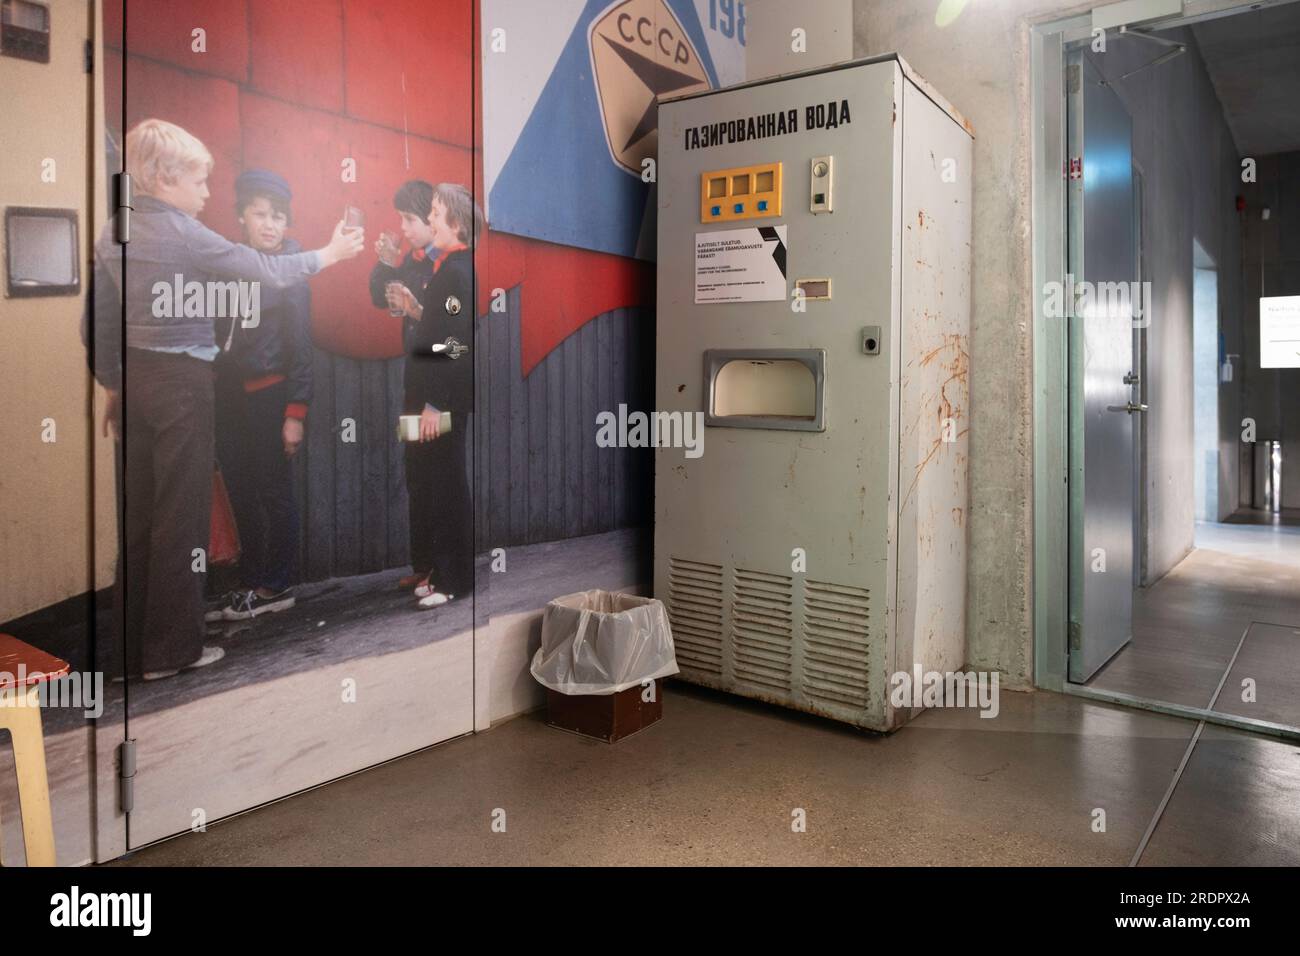 Vabamu Museum für Besatzungen und Freiheit. Altmodischer russischer Verkaufsautomat, mit dem man Mineralwasser zubereiten konnte (газированная вода) Stockfoto